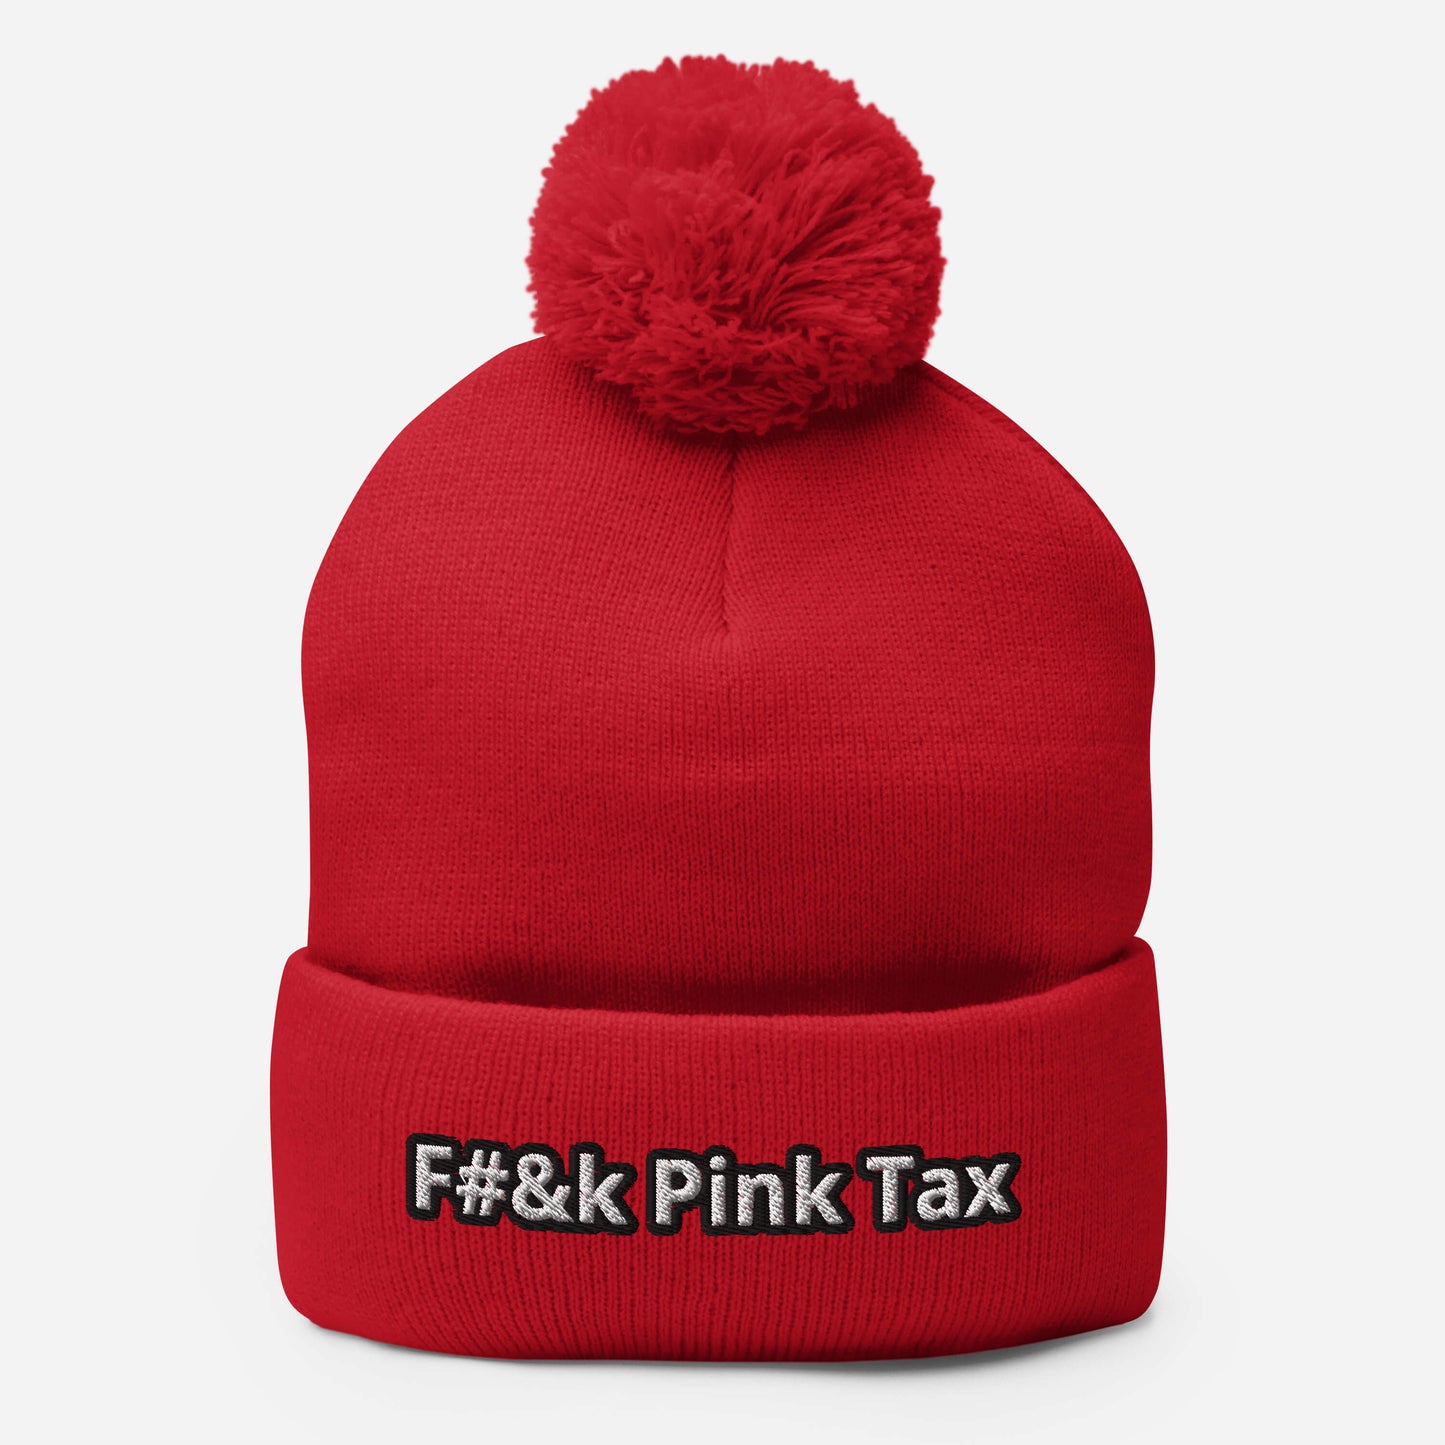 F#&k Pink Tax Pom-Pom Beanie